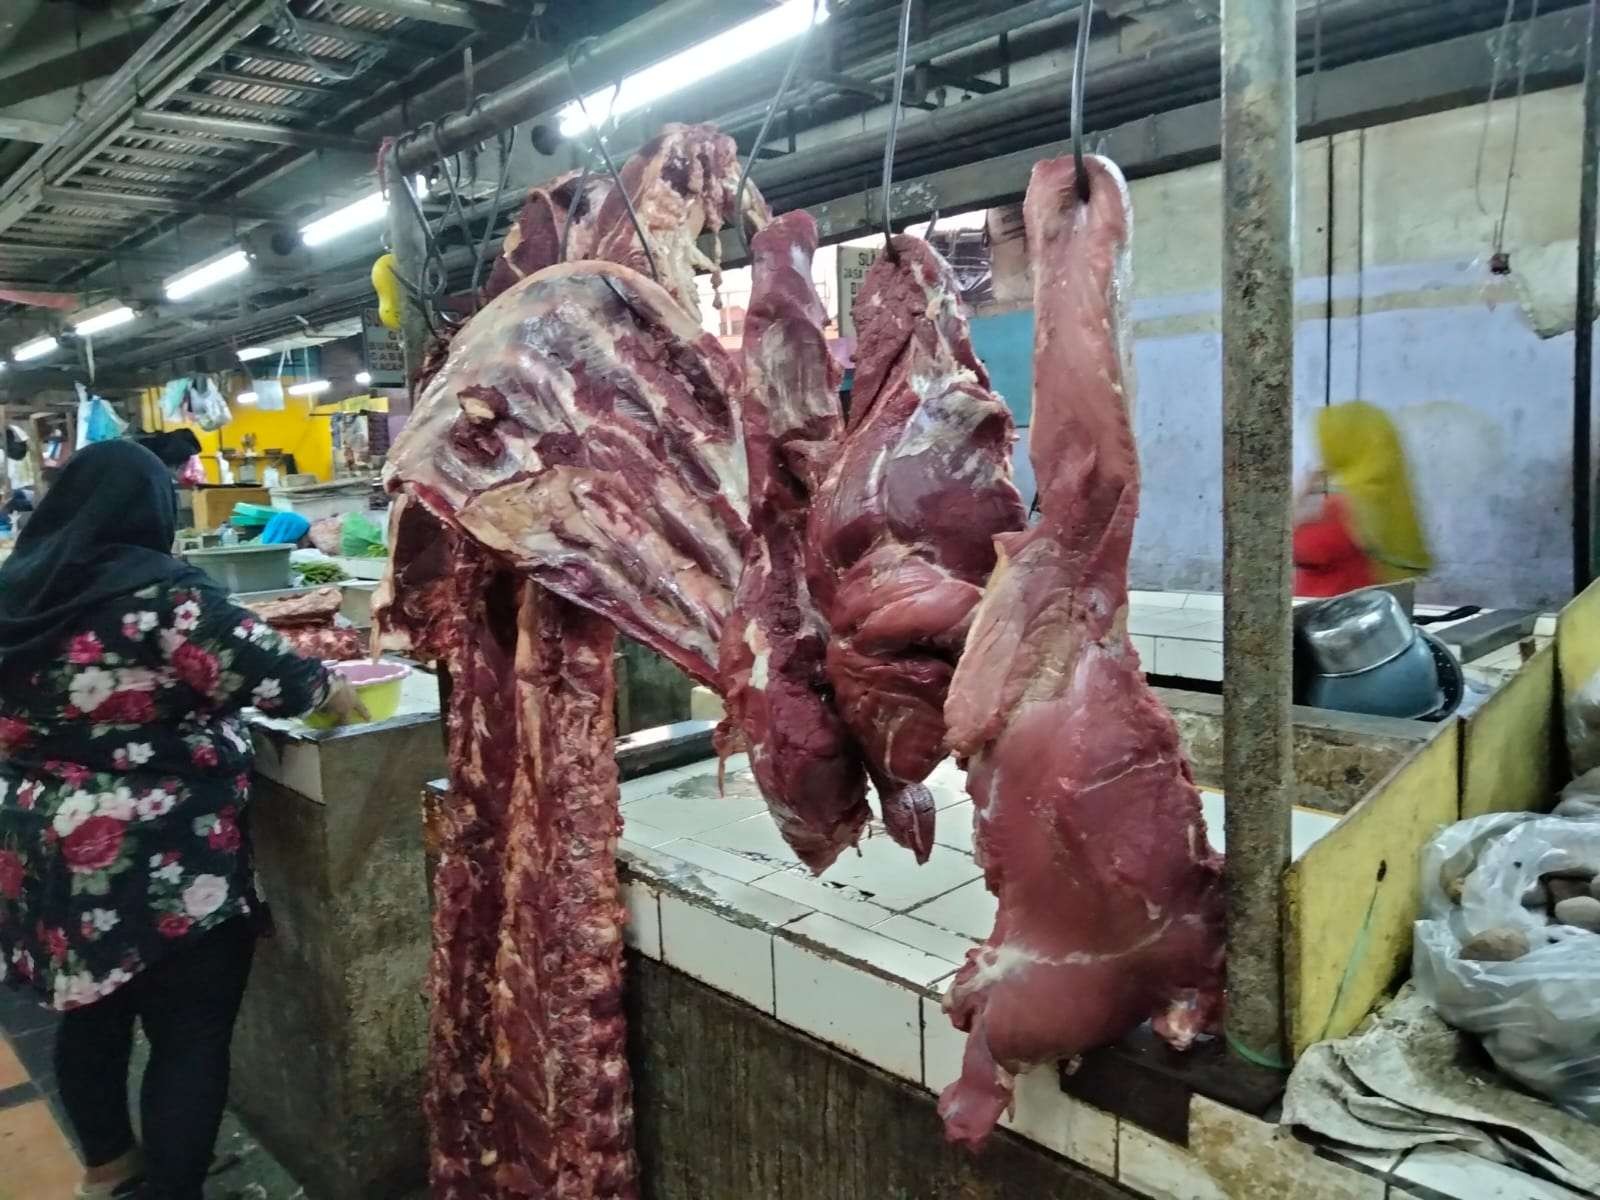 Harga daging mengalami kenaikan dan pedagang pun sepi pembeli. (Foto: Istimewa)